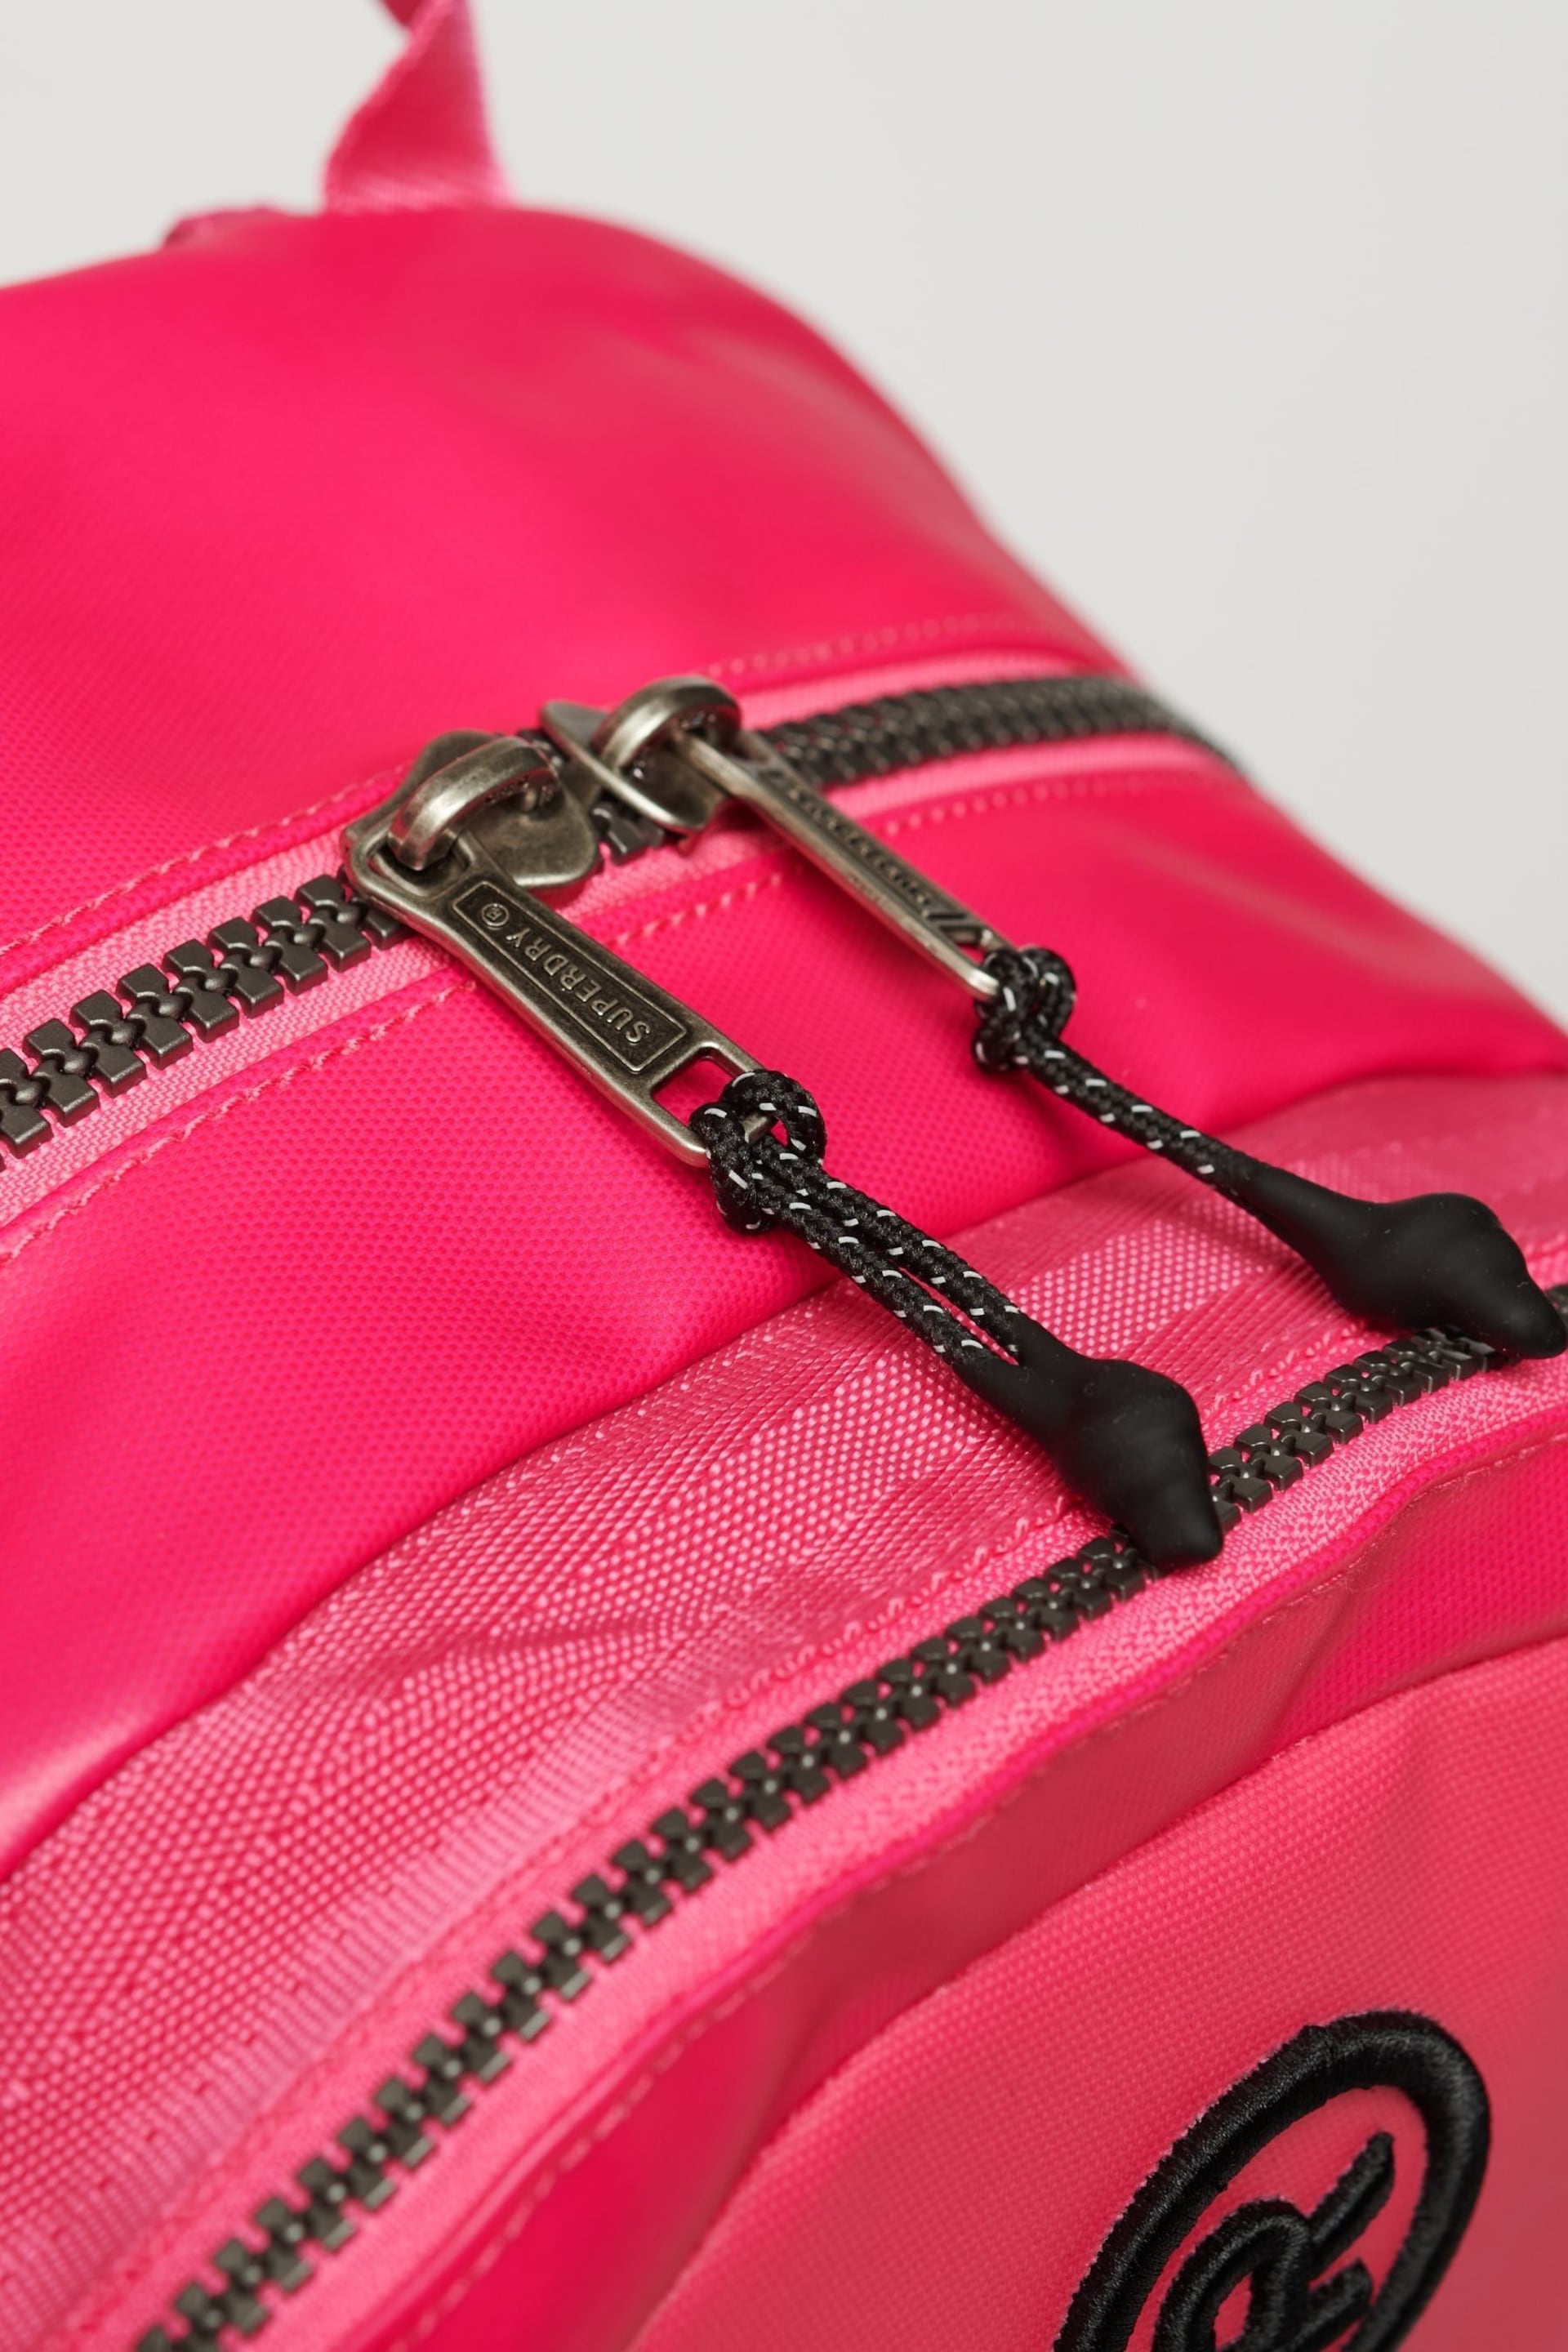 Superdry Pink Tarp Rucksack Bag - Image 4 of 5